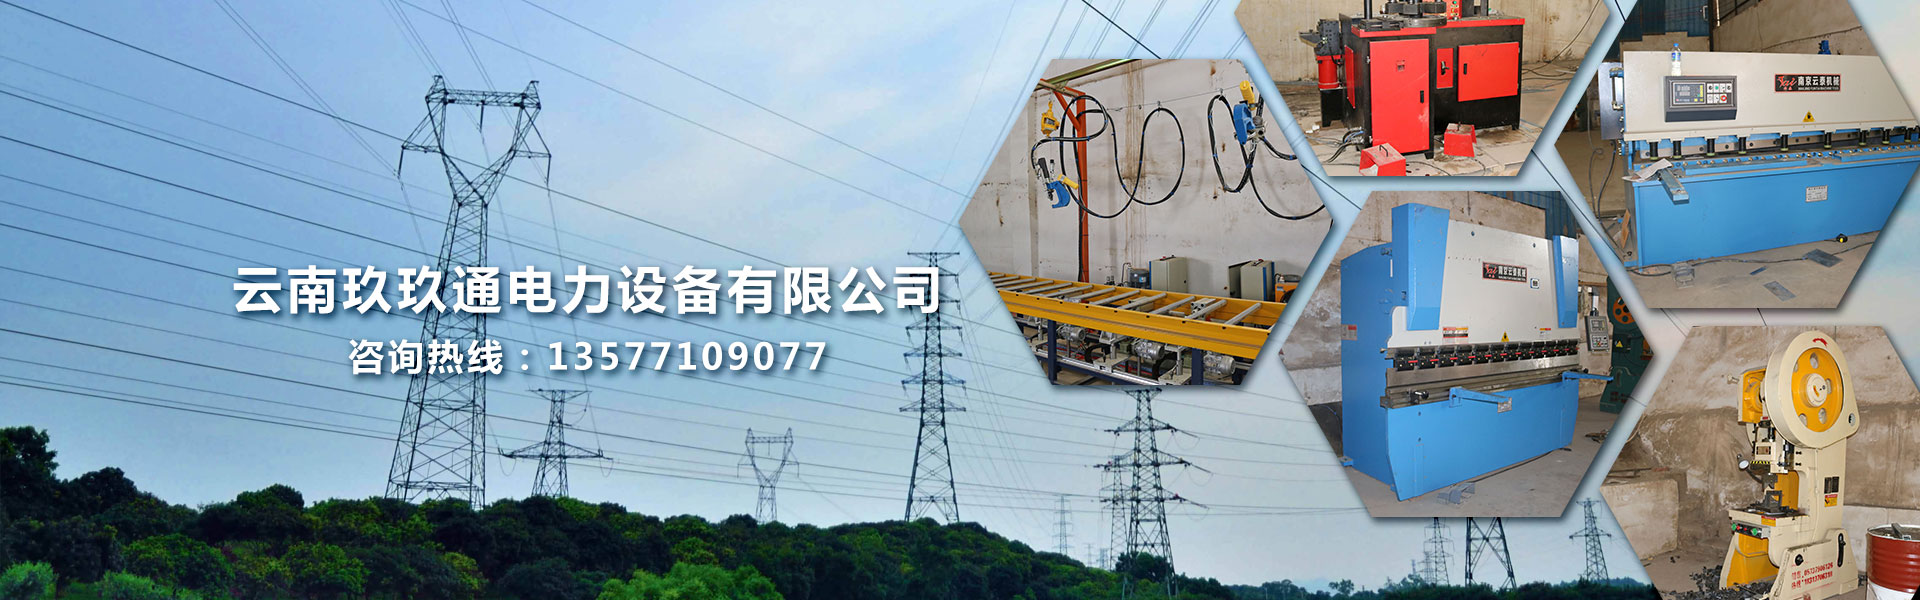 云南电缆桥架厂商安装电缆桥架的流程